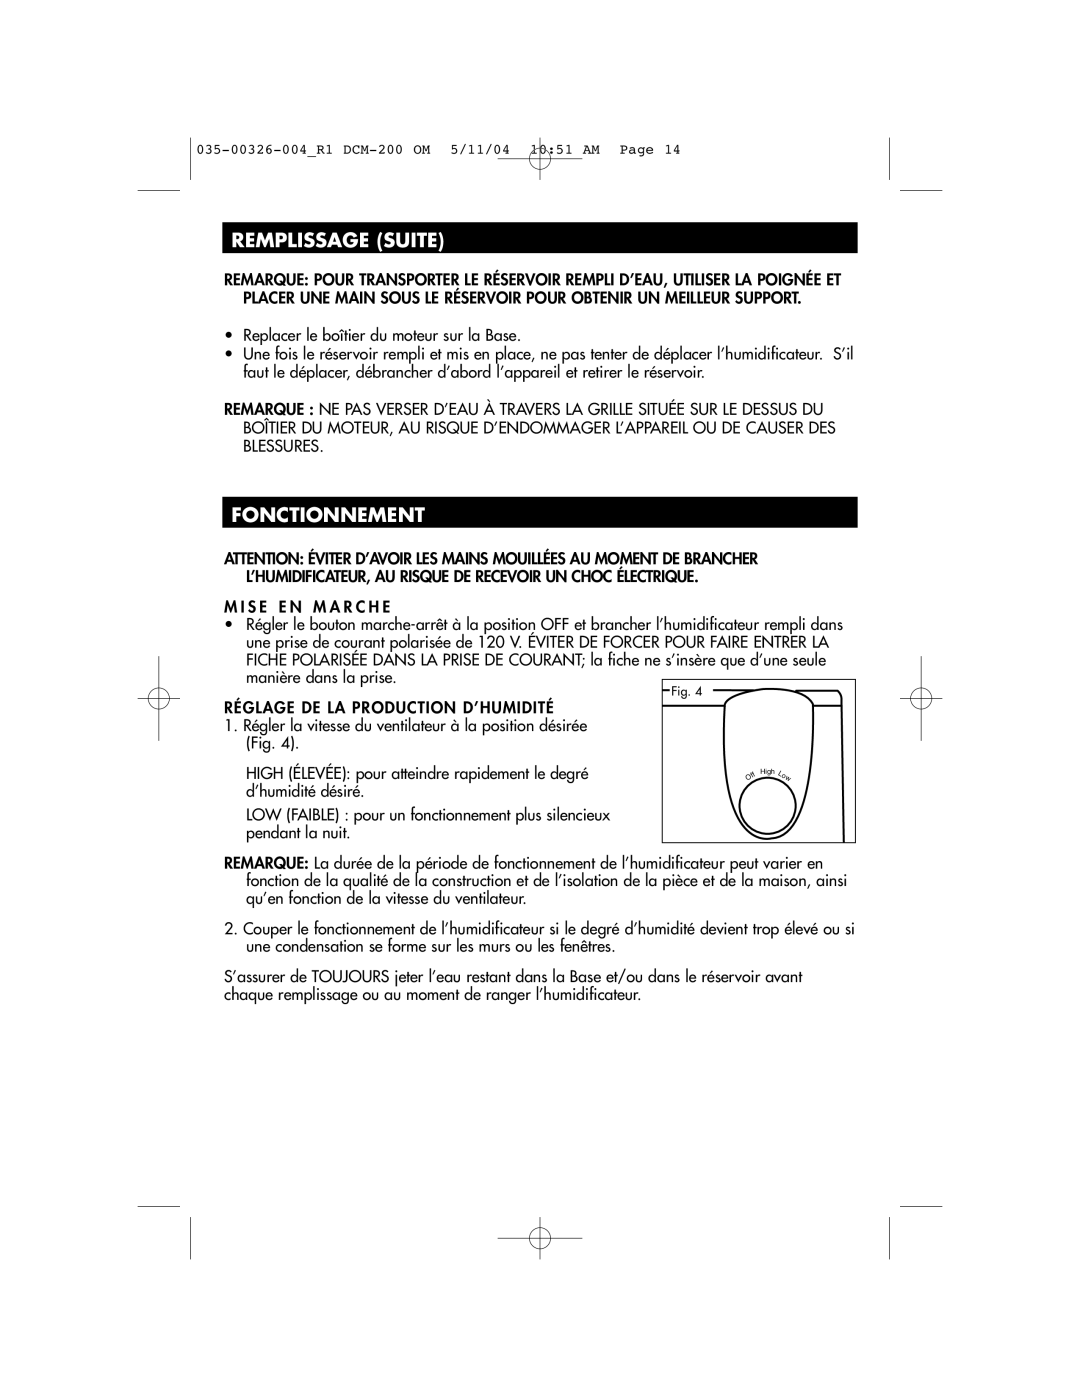 Duracraft DCM-200 owner manual Remplissage Suite, Fonctionnement 